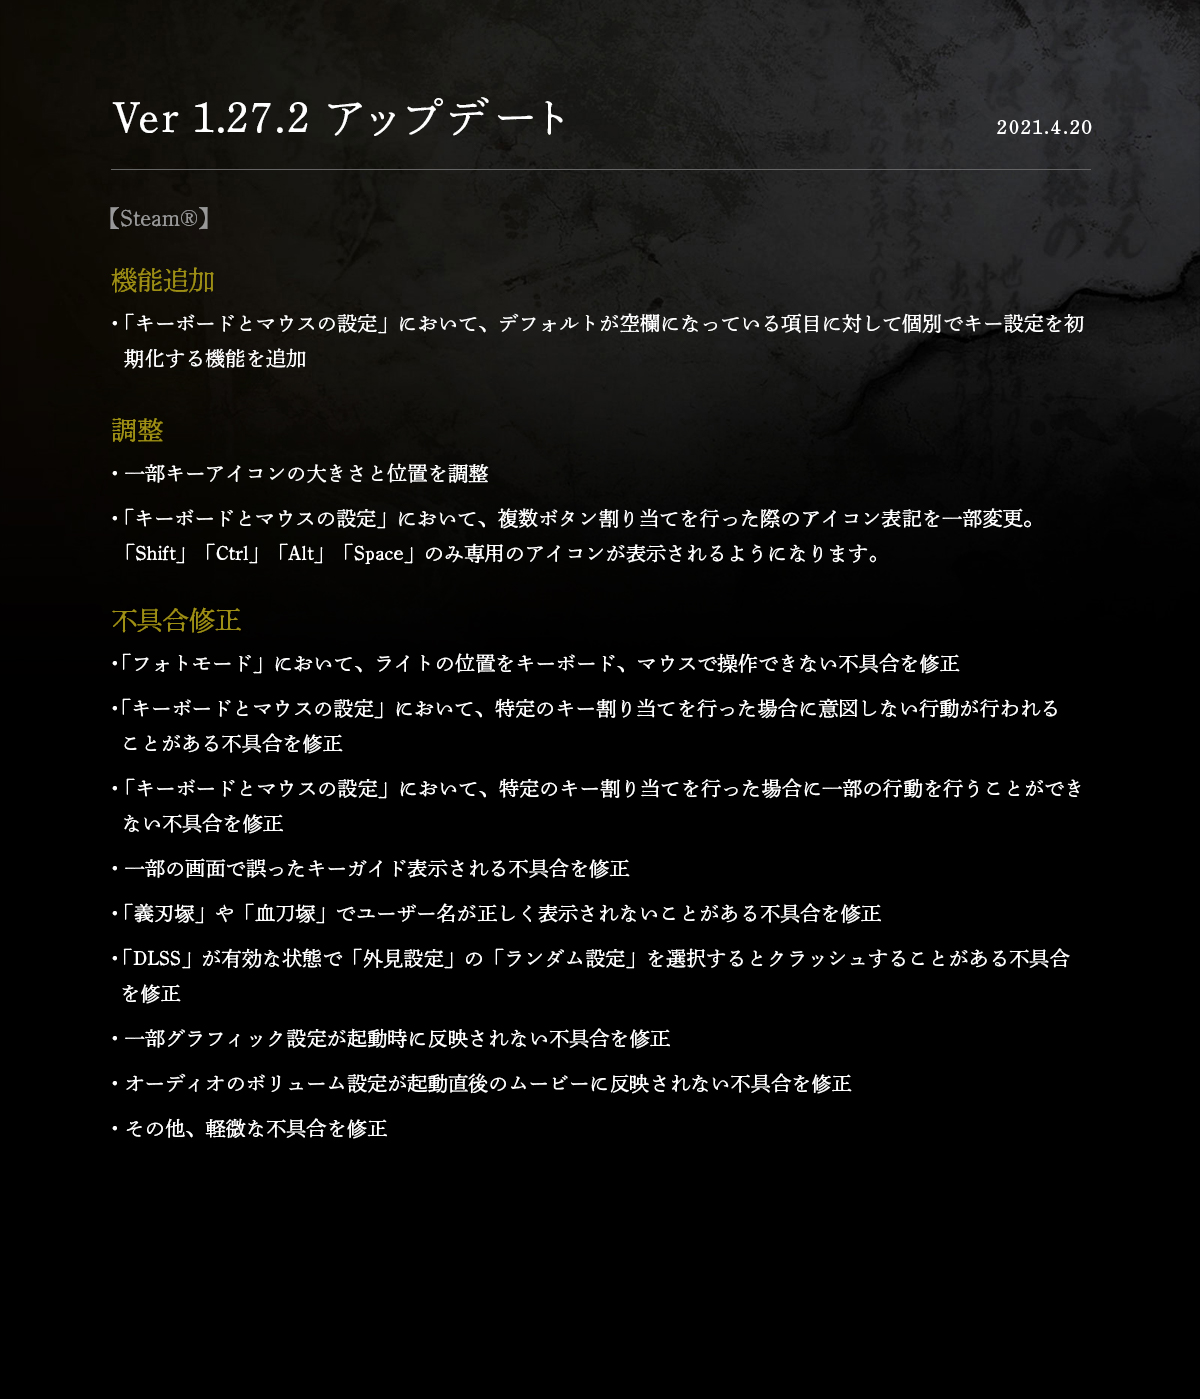 《仁王2》PC版最新更新上線 追加新機能調整修複問題